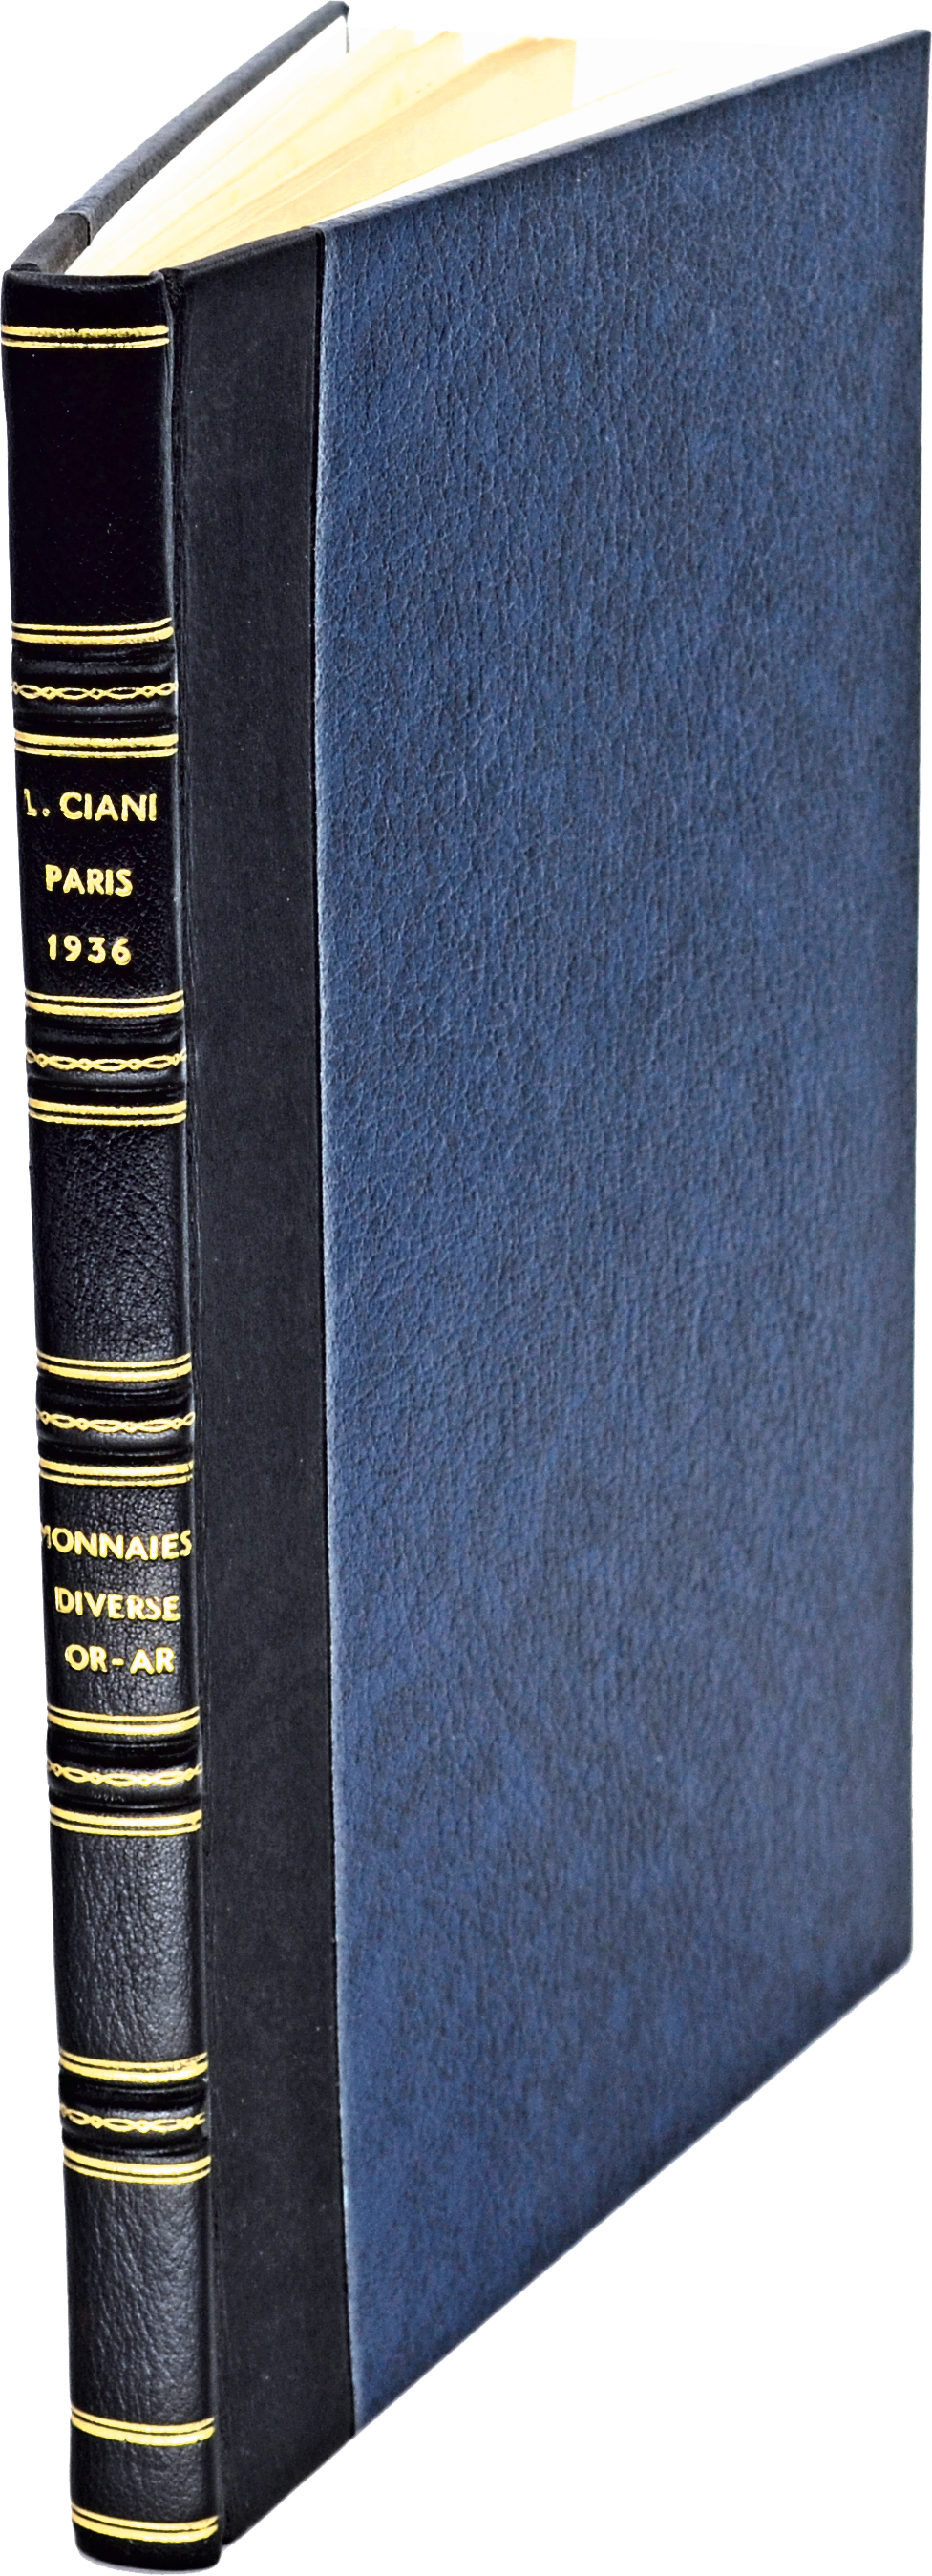 LOUIS CIANI, Auktion vom 14.-16.5.1936, Paris [Etienne Pruvost].